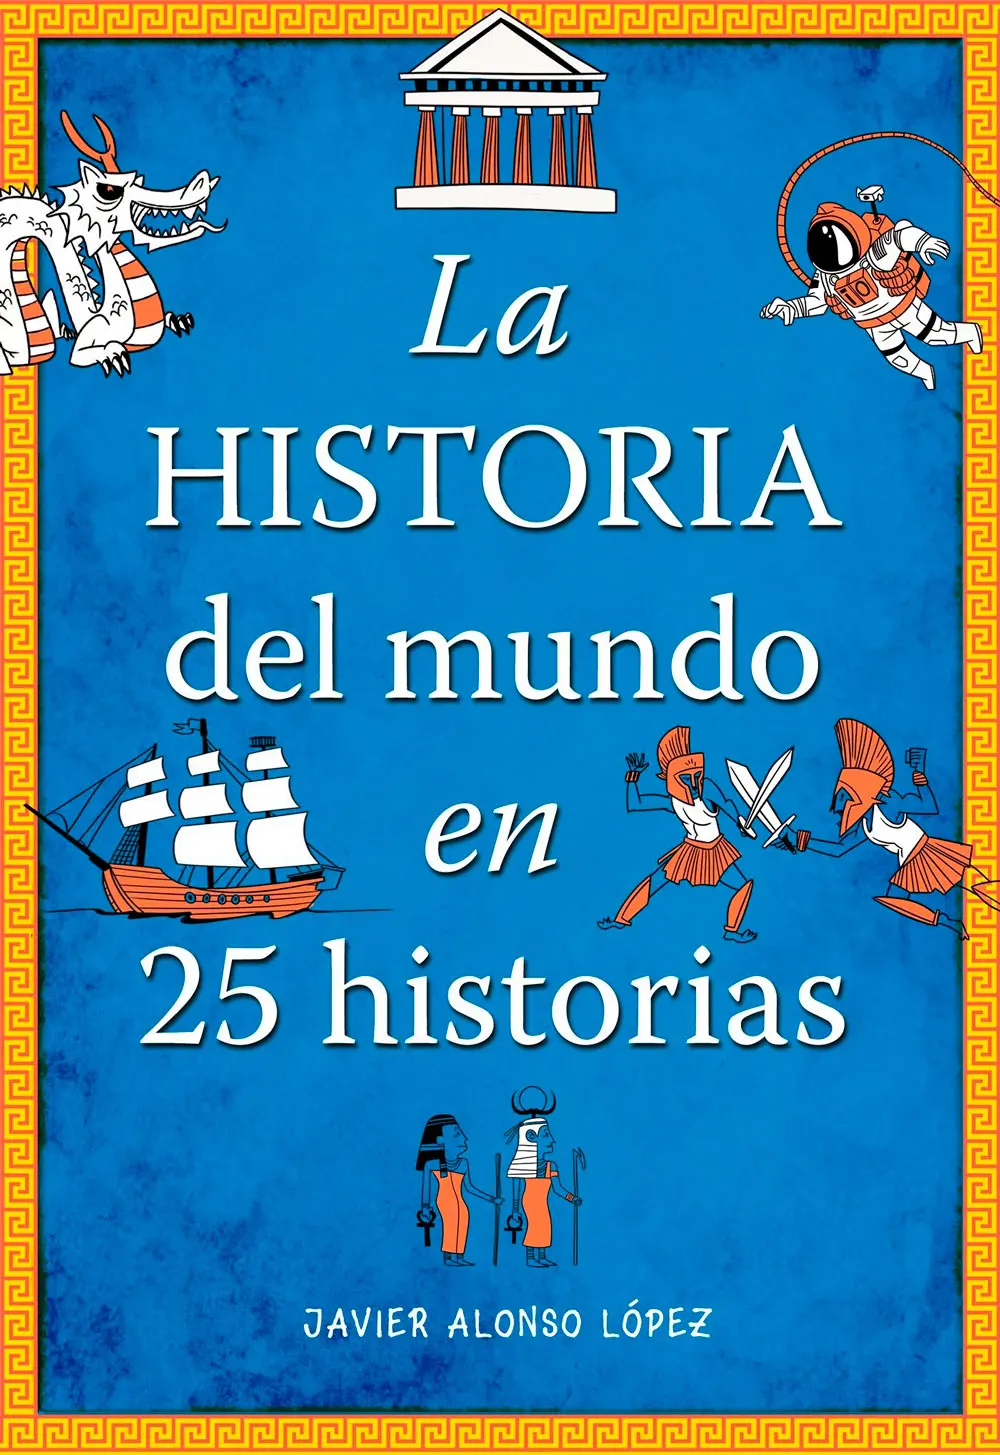 Libro La Historia del mundo en 25 historias, de Javier Alonso